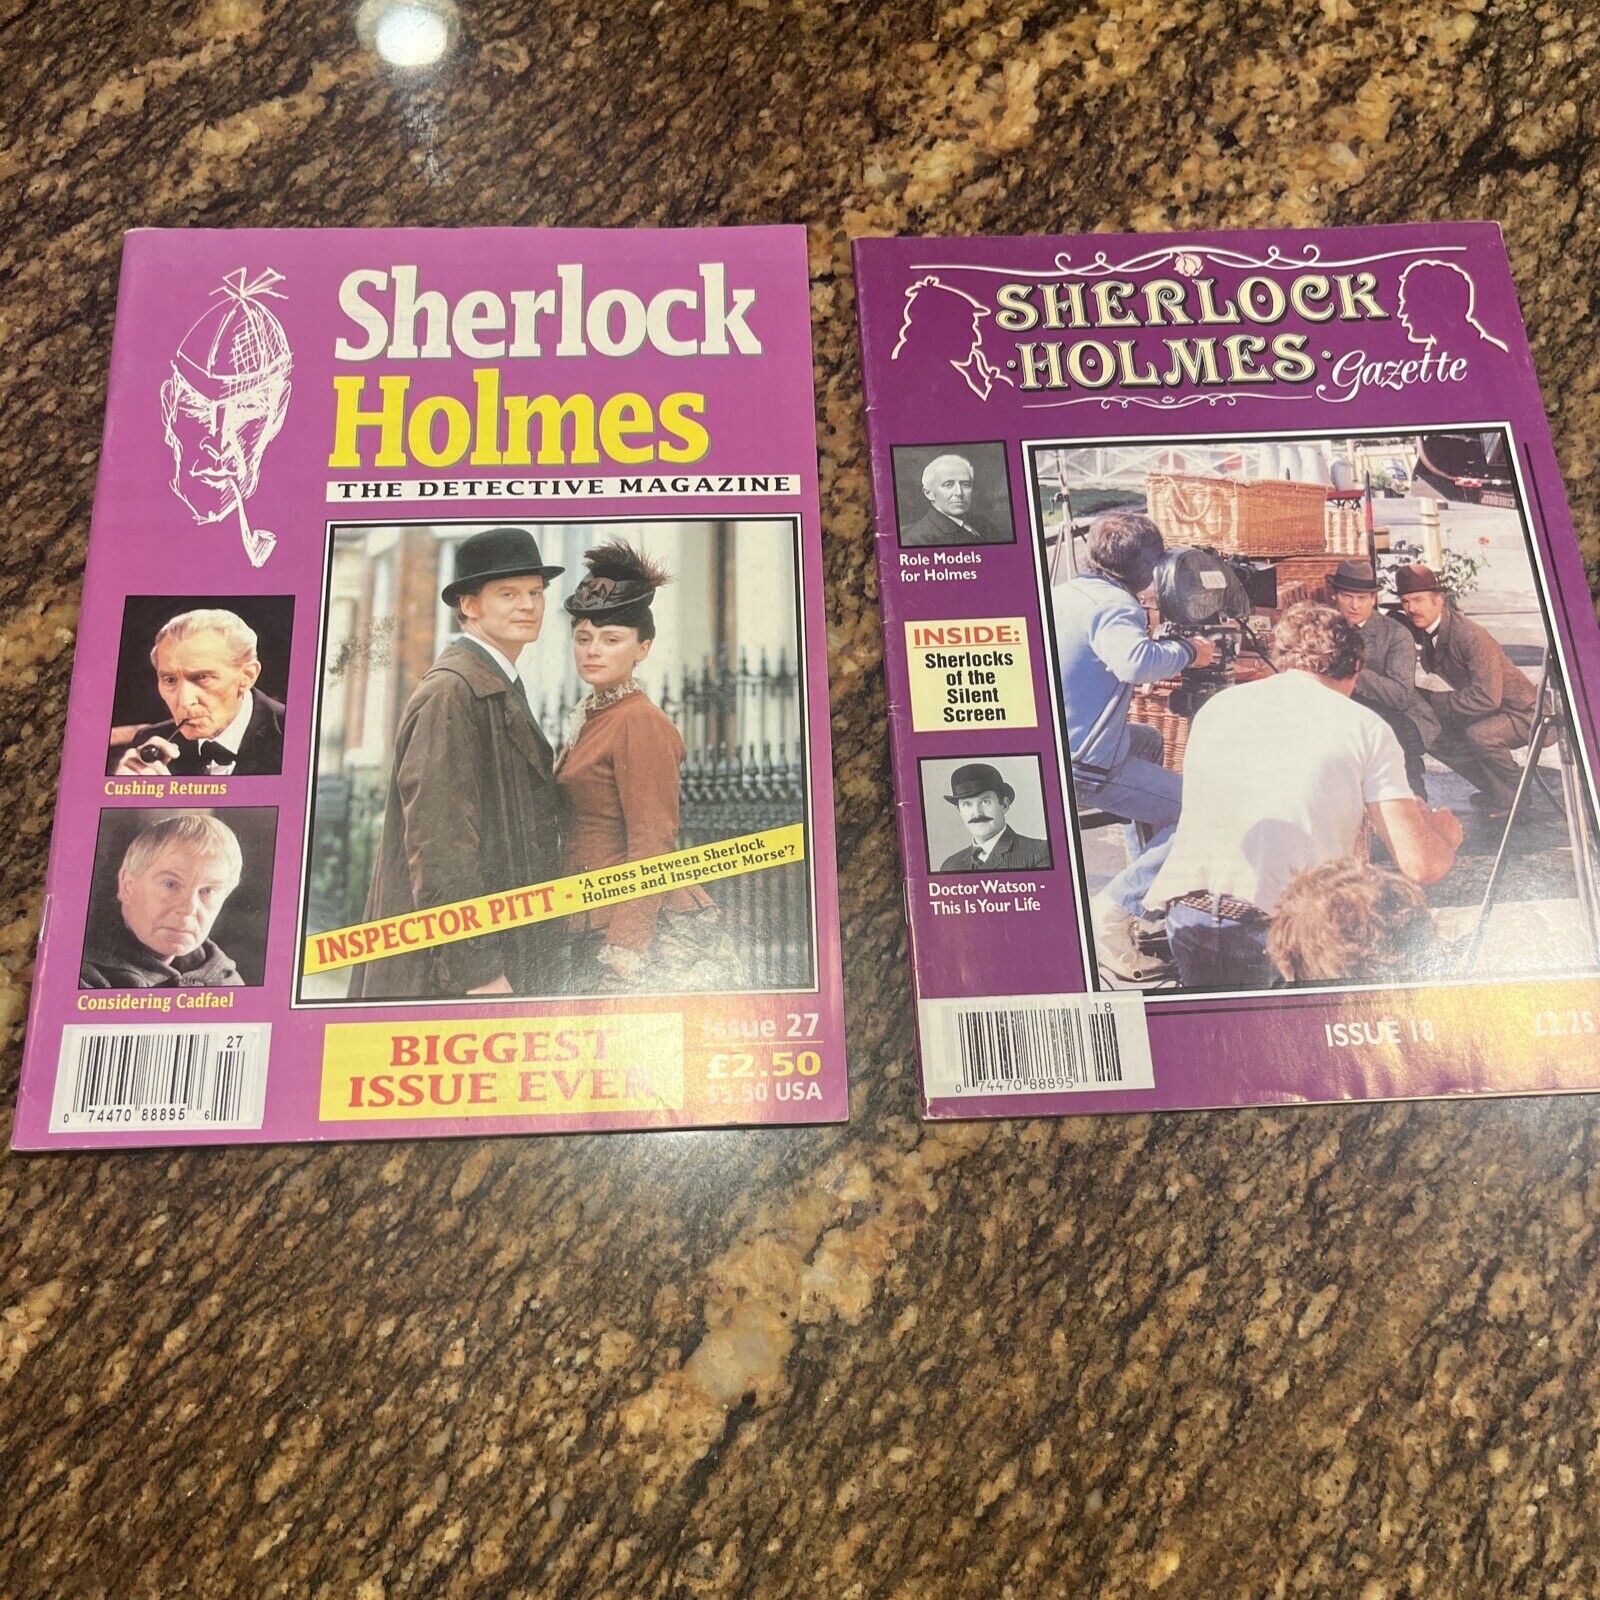 RARE Vintage Sherlock Holmes Gazette Issue No. 18 1996 Issue 27 Magazine